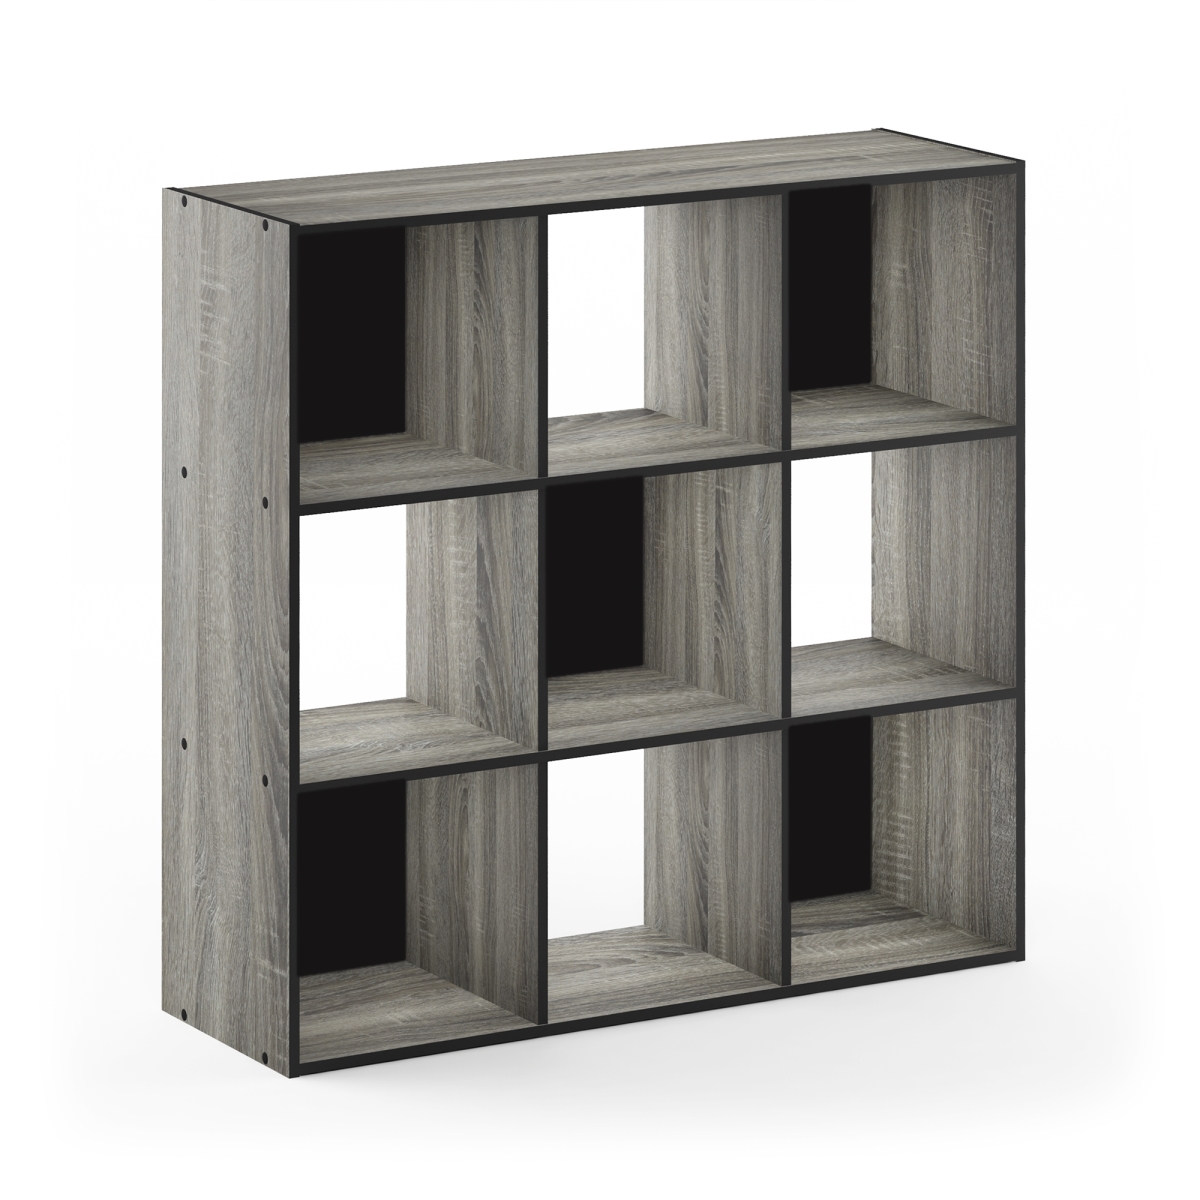 18055gyw 3 X 3 In. Pelli Cubic Storage Cabinet, French Oak Grey & Black